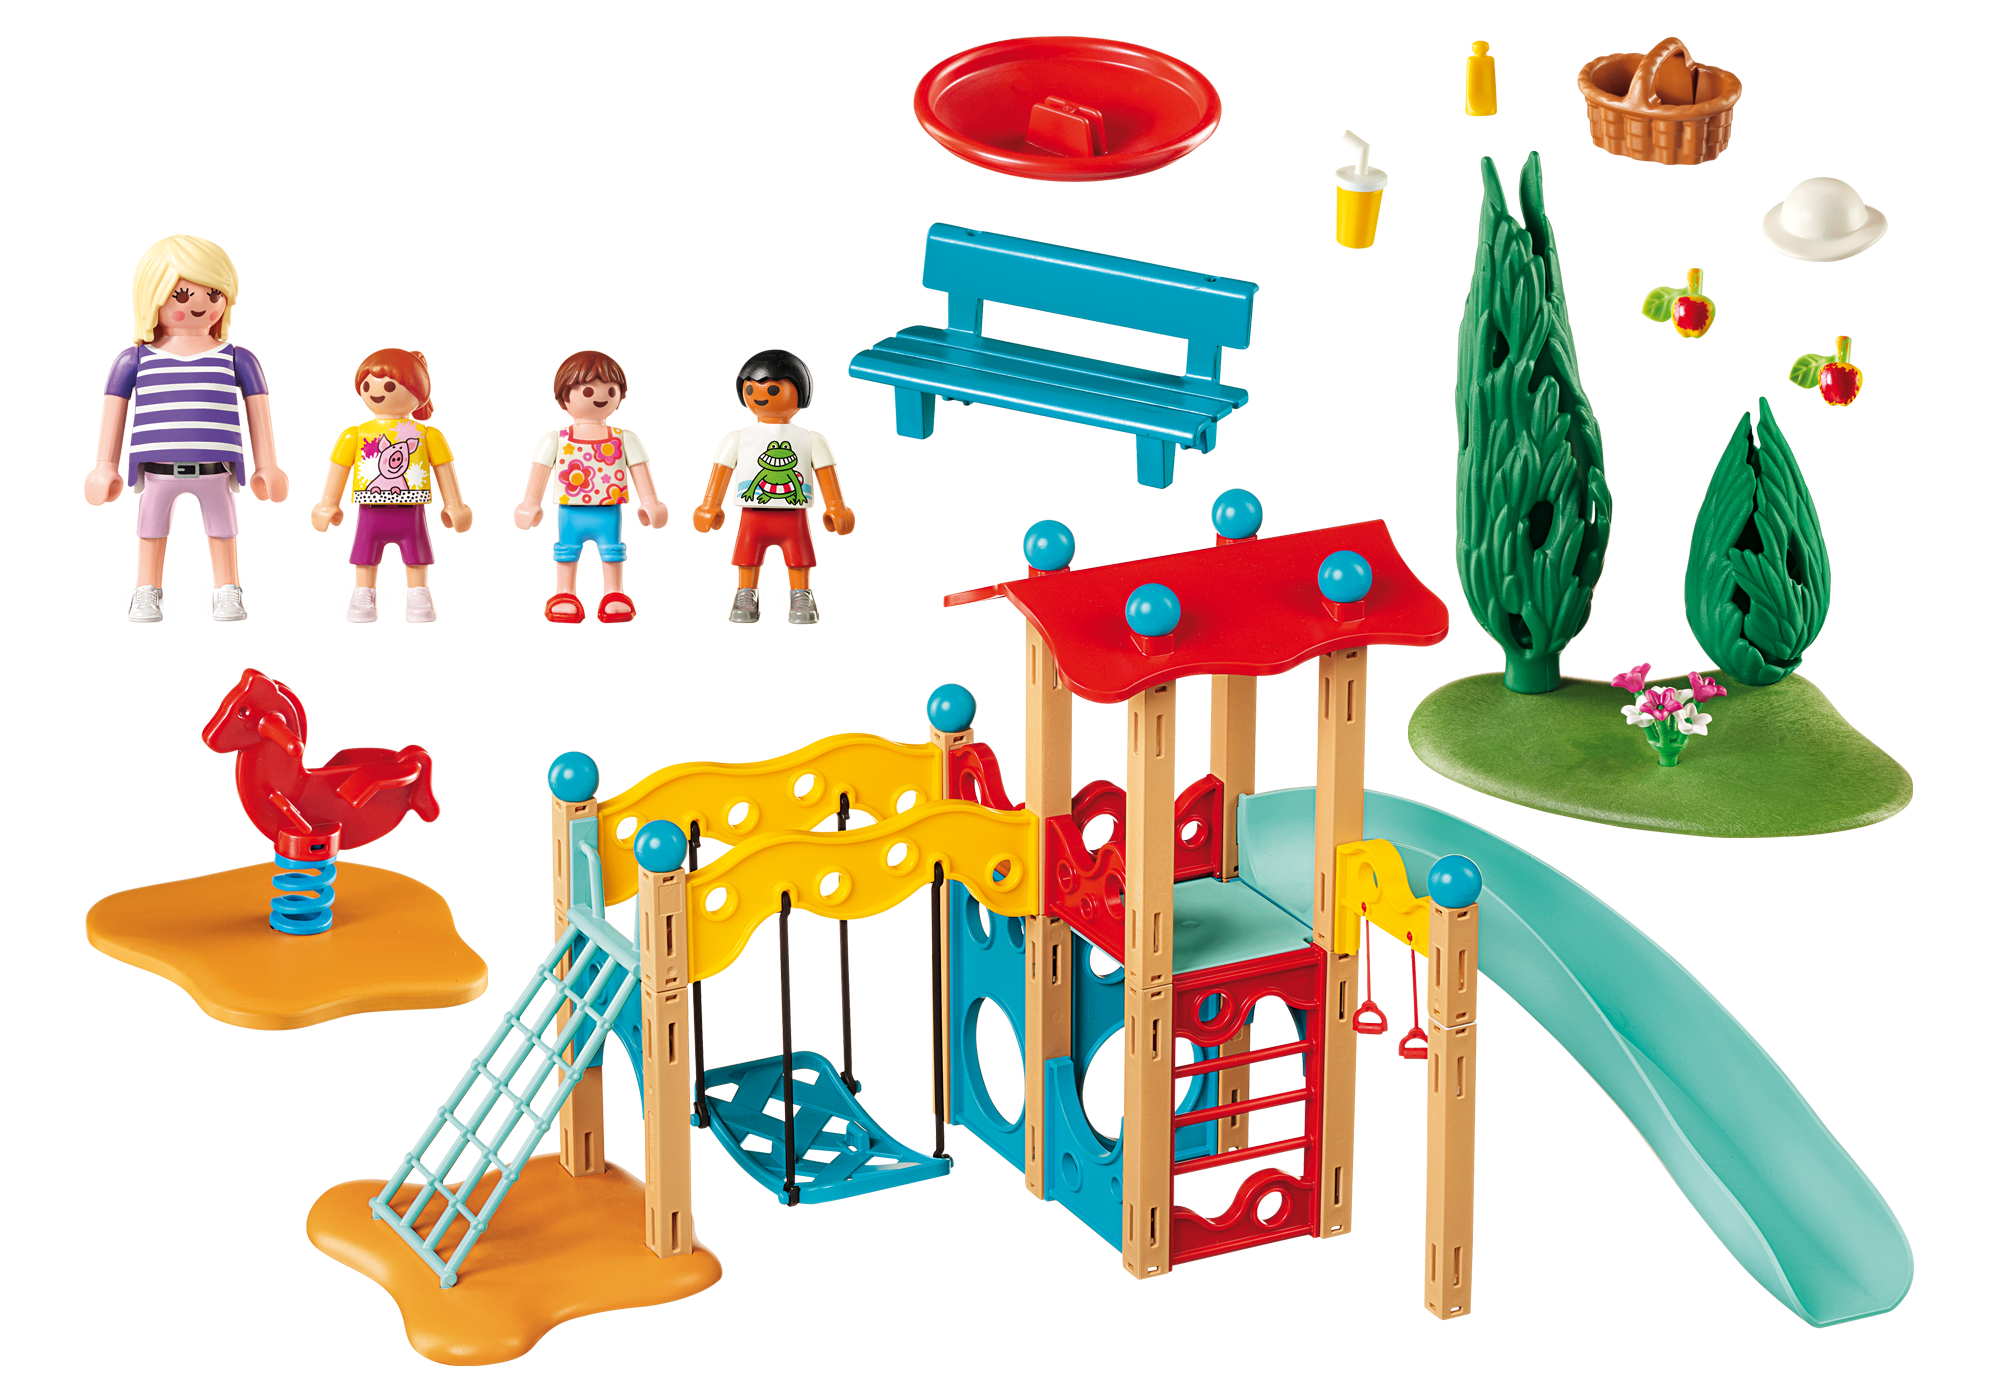 playmobil playground playset